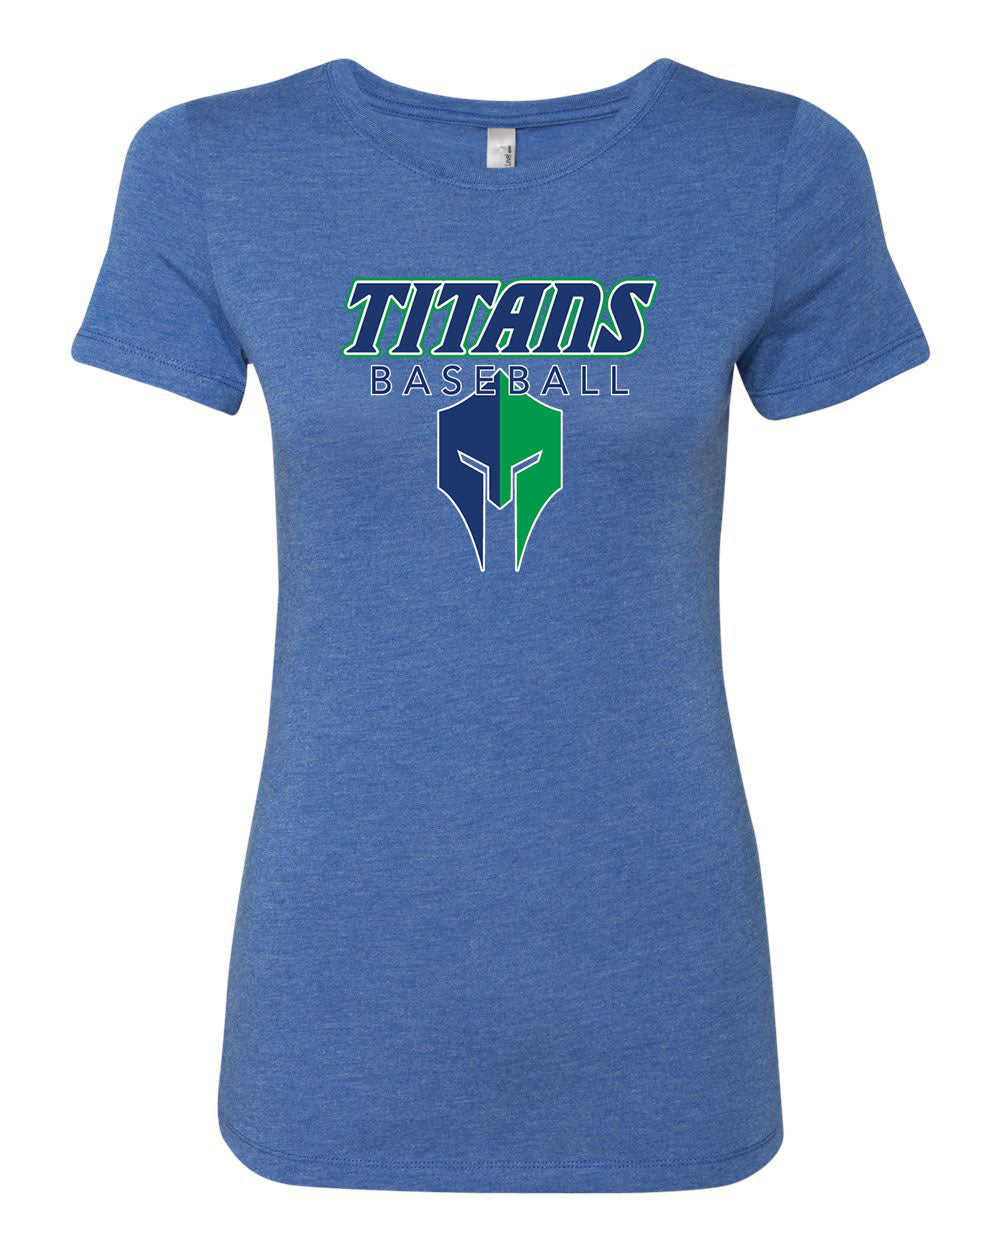 Titans Women’s Tri-Blend Blue T-Shirt "Classic" - 6710 (color options available)